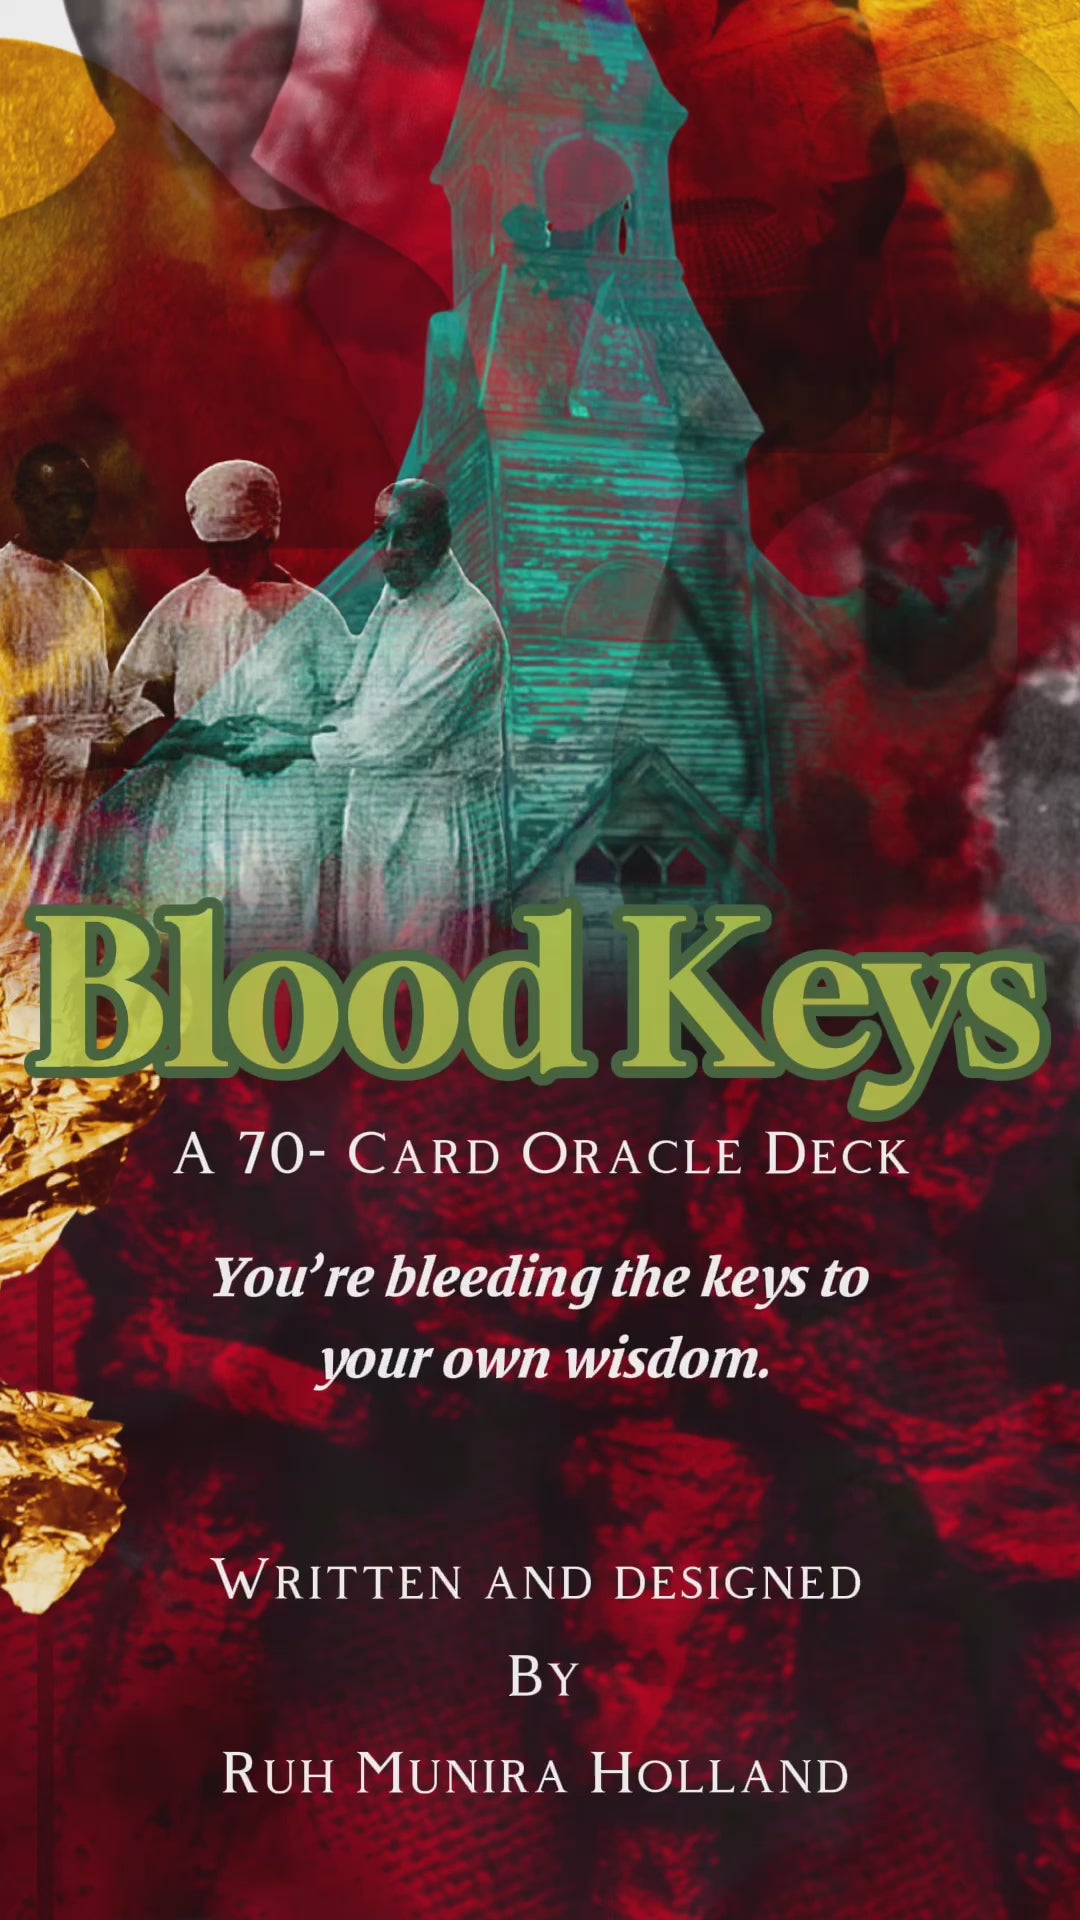 Blood Keys Oracle Deck